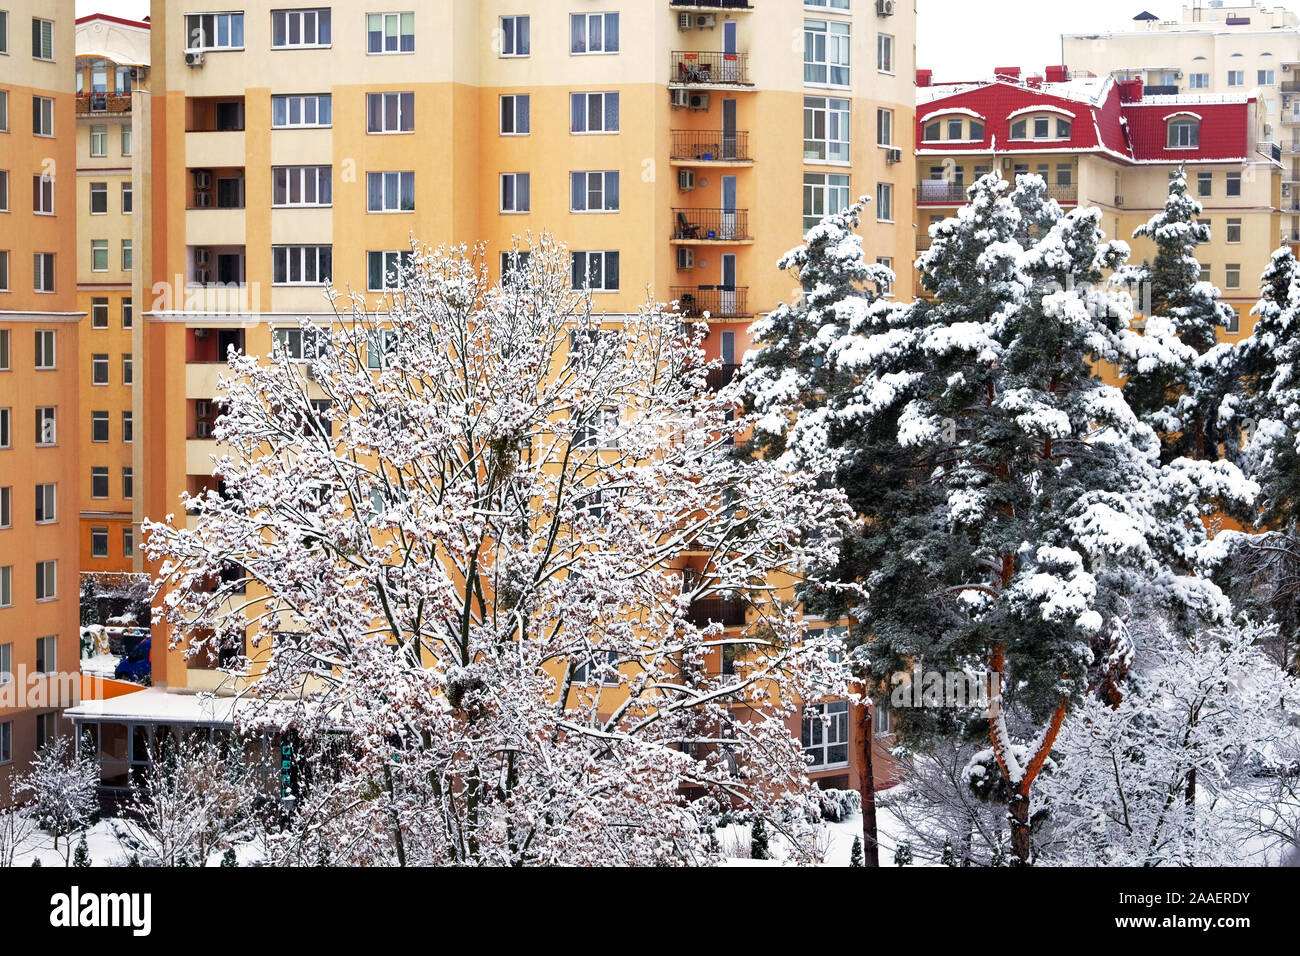 Immeuble en hiver avec de beaux arbres couverts de givre sur l'avant. Neige de décembre. Banque D'Images